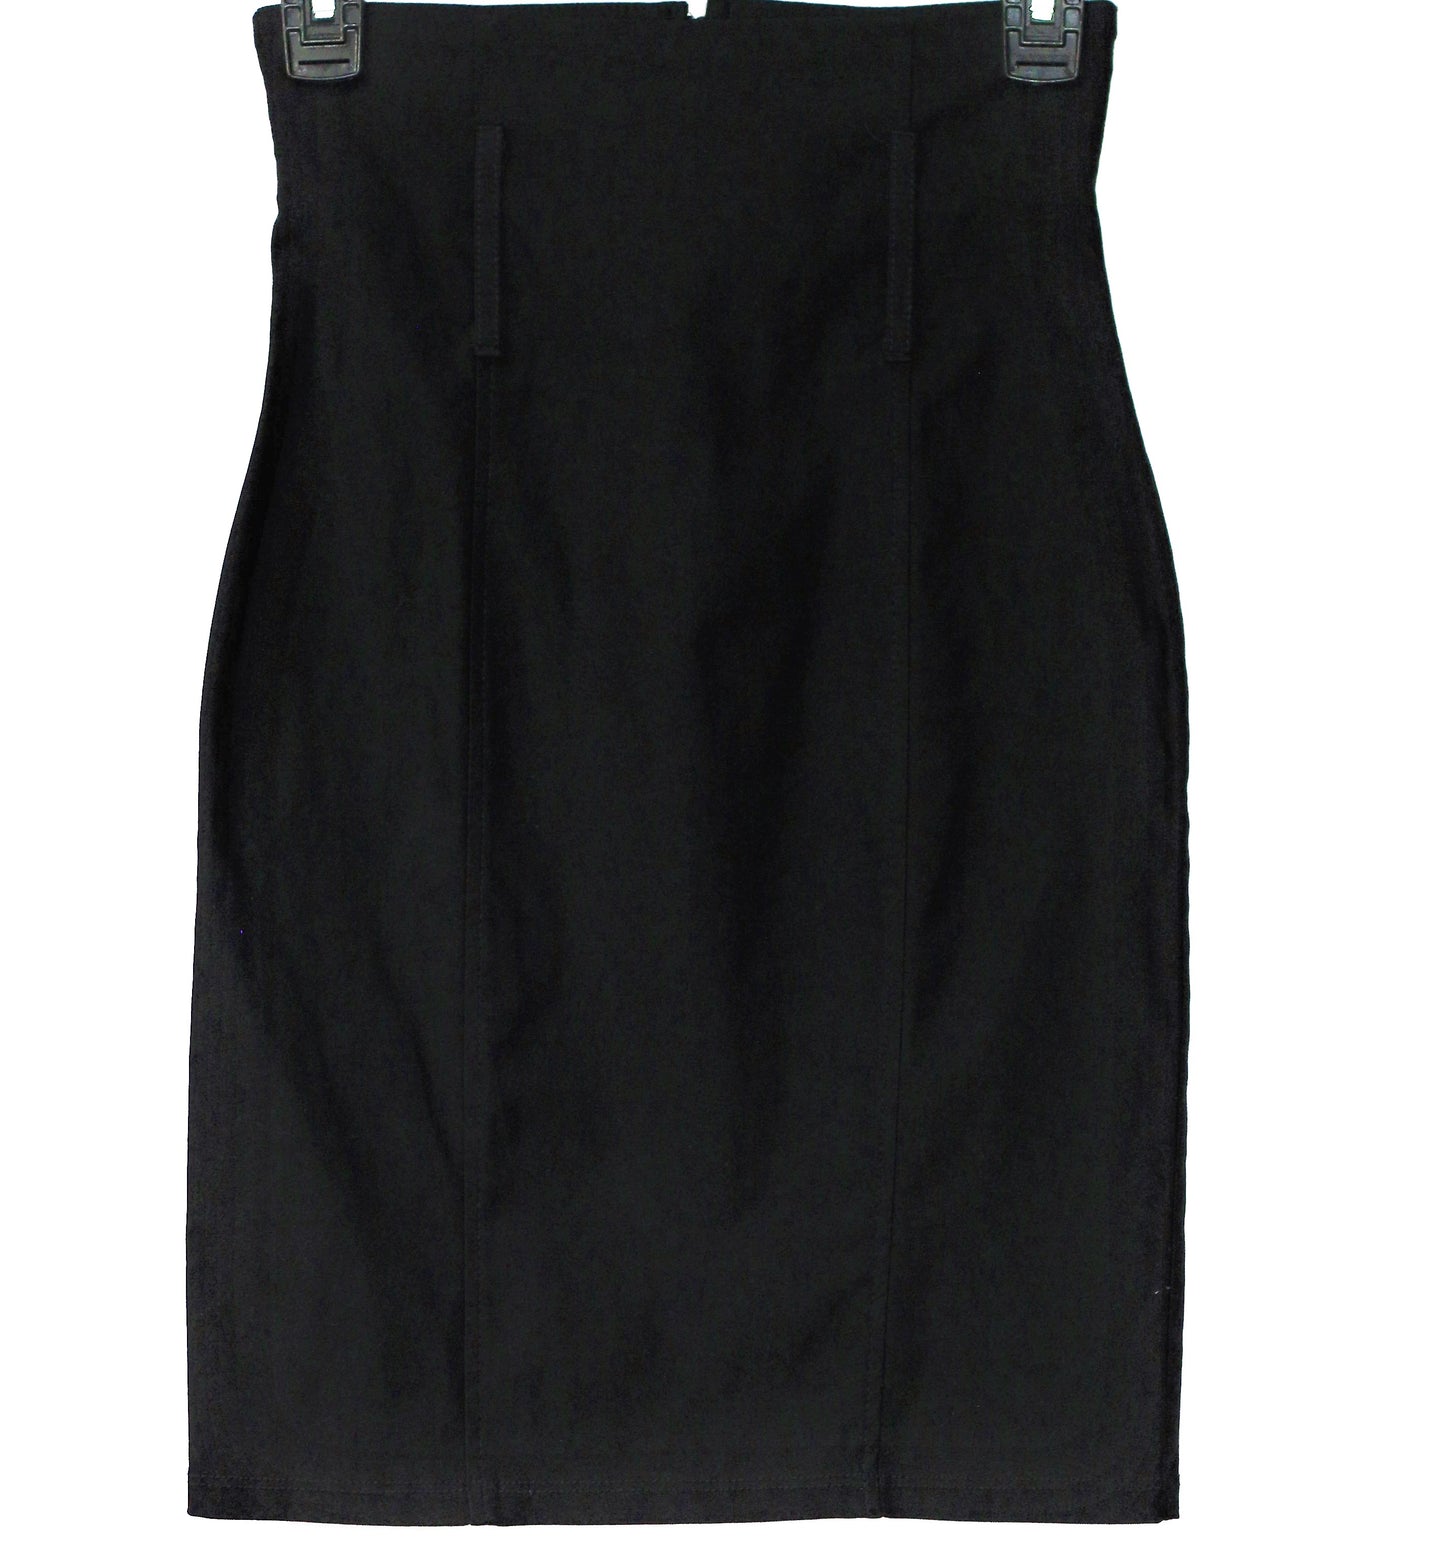 Women's  Black Pencil Skirt